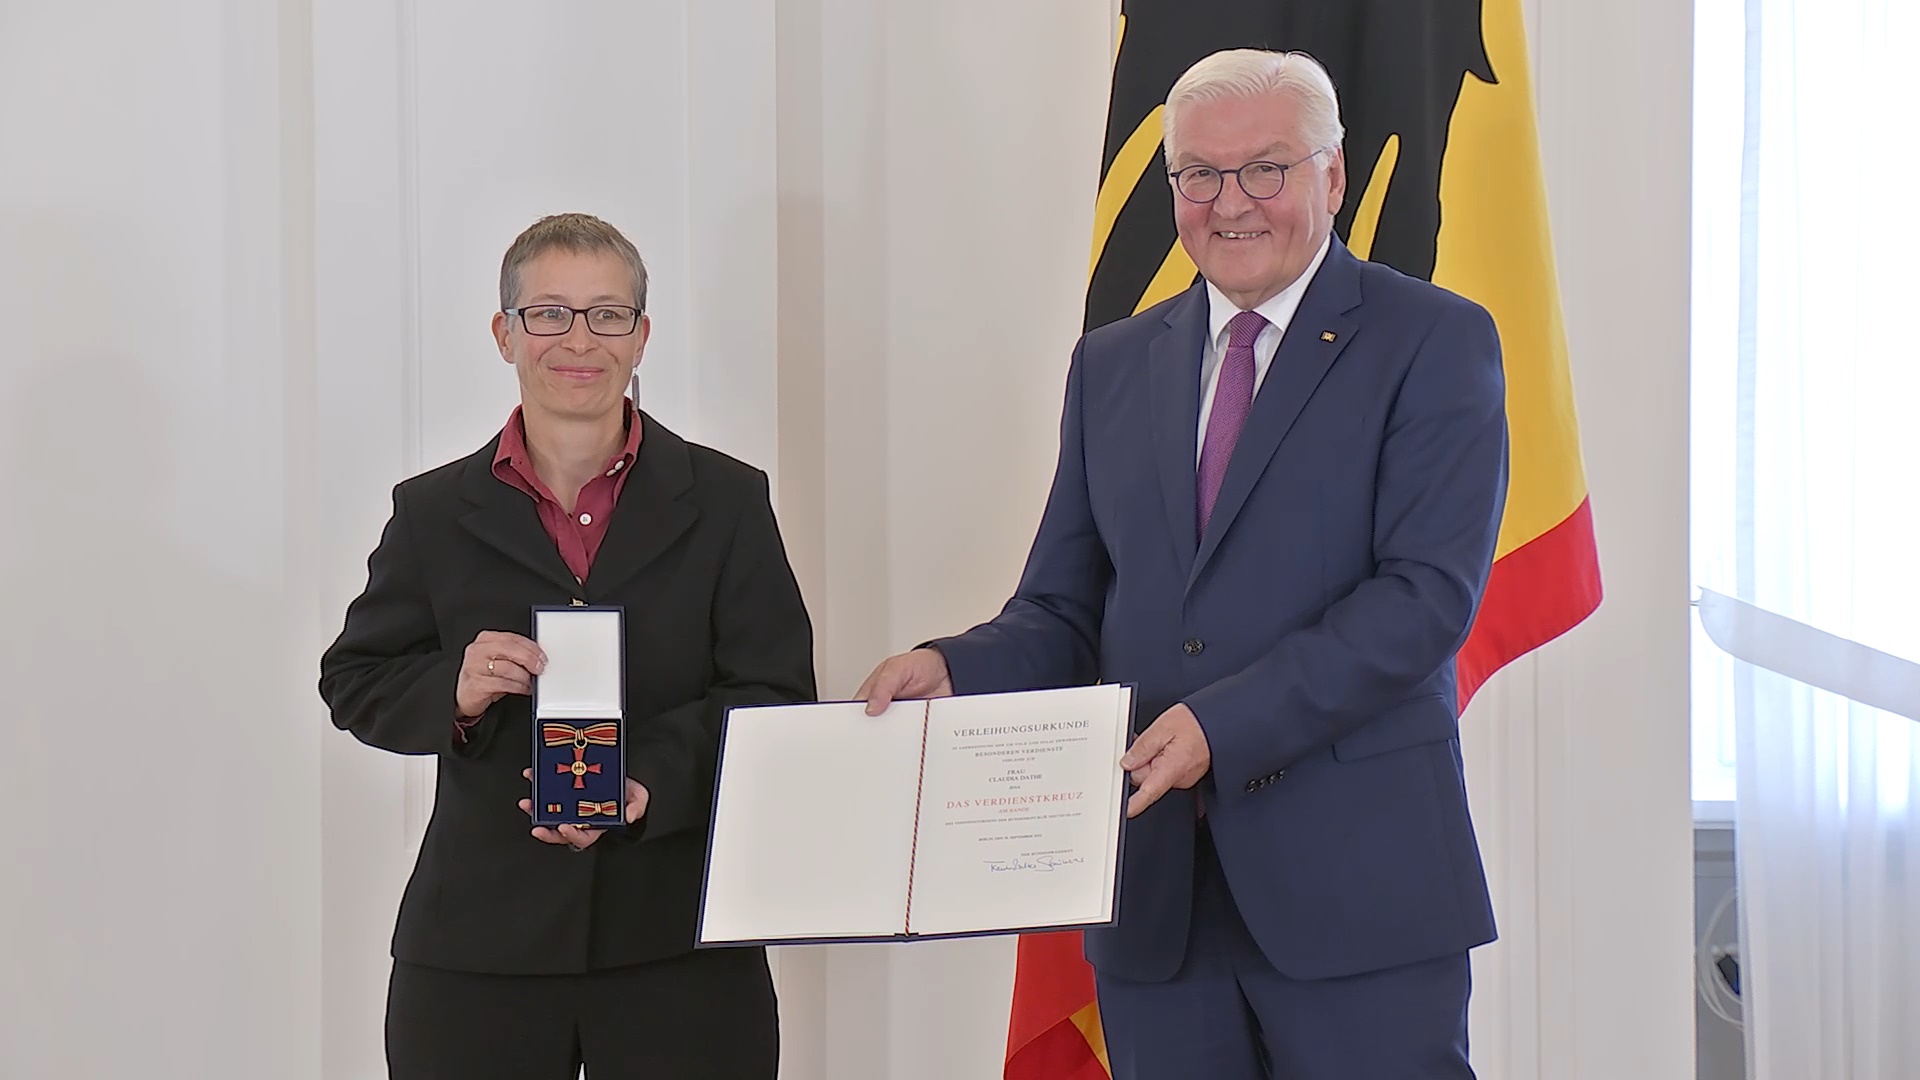 Übersetzerin Claudia Dathe mit dem Bundespräsidenten Frank-Walter Steinmeier; Screenshot aus dem Video der Ordensverleihung